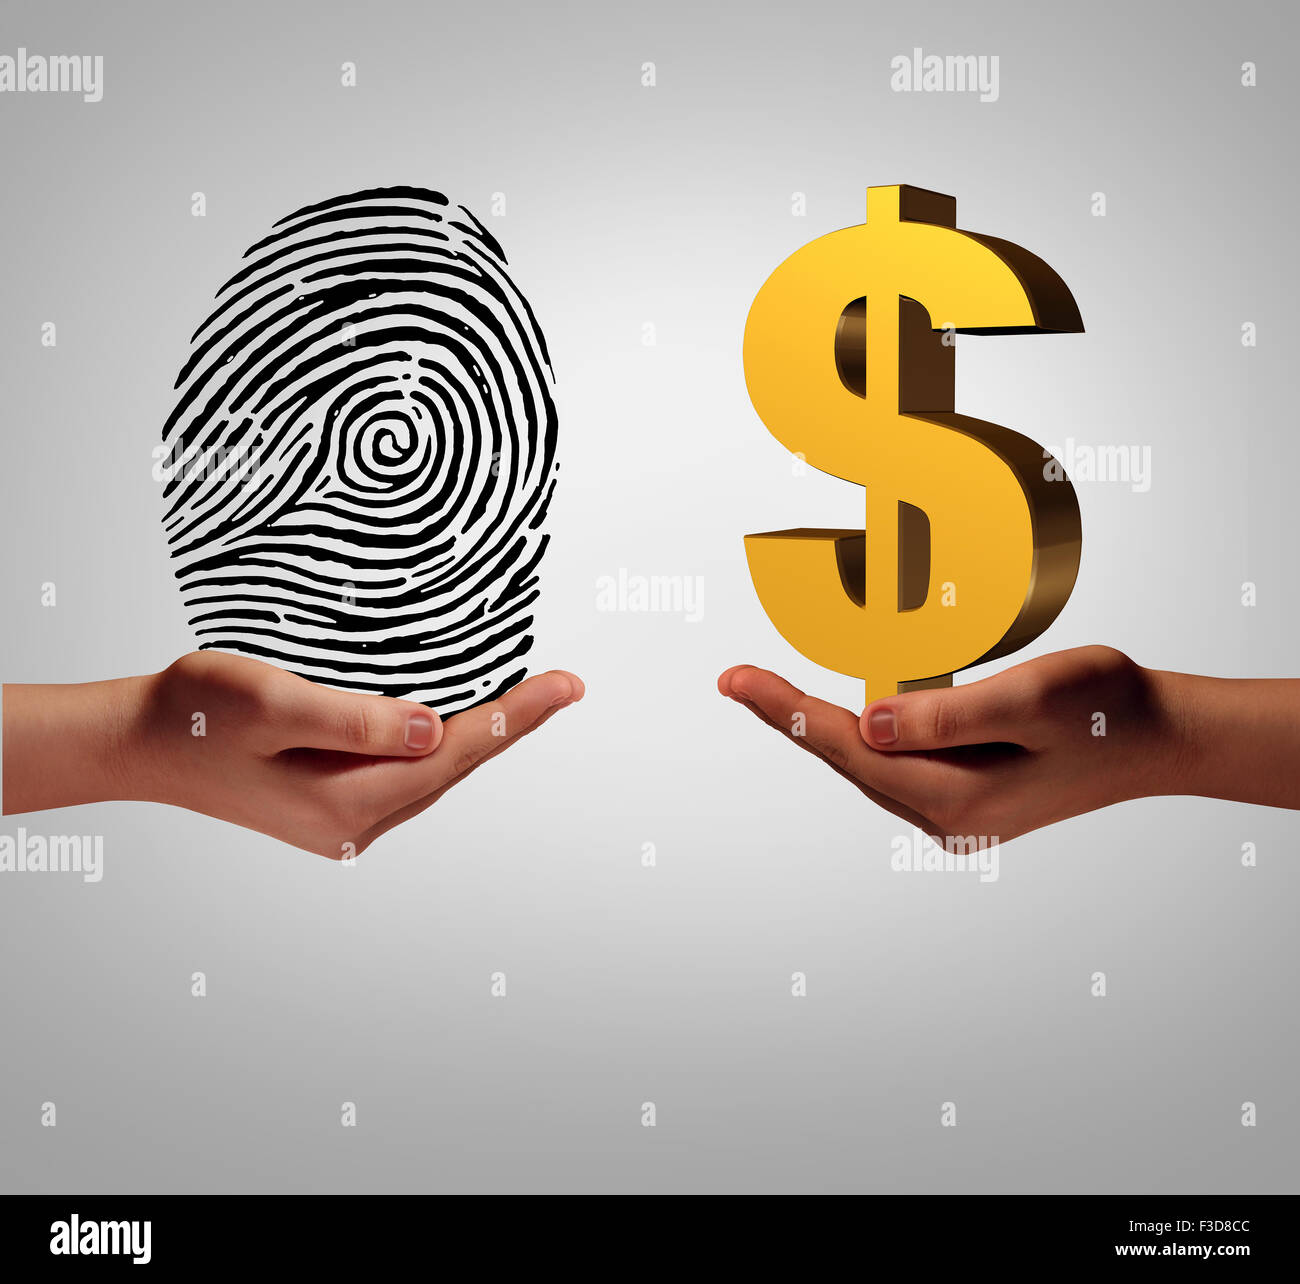 Persönliche Daten Vermittlung Geschäftskonzept und Kauf und Verkauf von persönlichen Informationen wie eine Hand hält ein Fingerabdruck und eine andere Person mit einem Dollarsymbol als Metapher für eine Identifizierung Sicherheitszugriff. Stockfoto